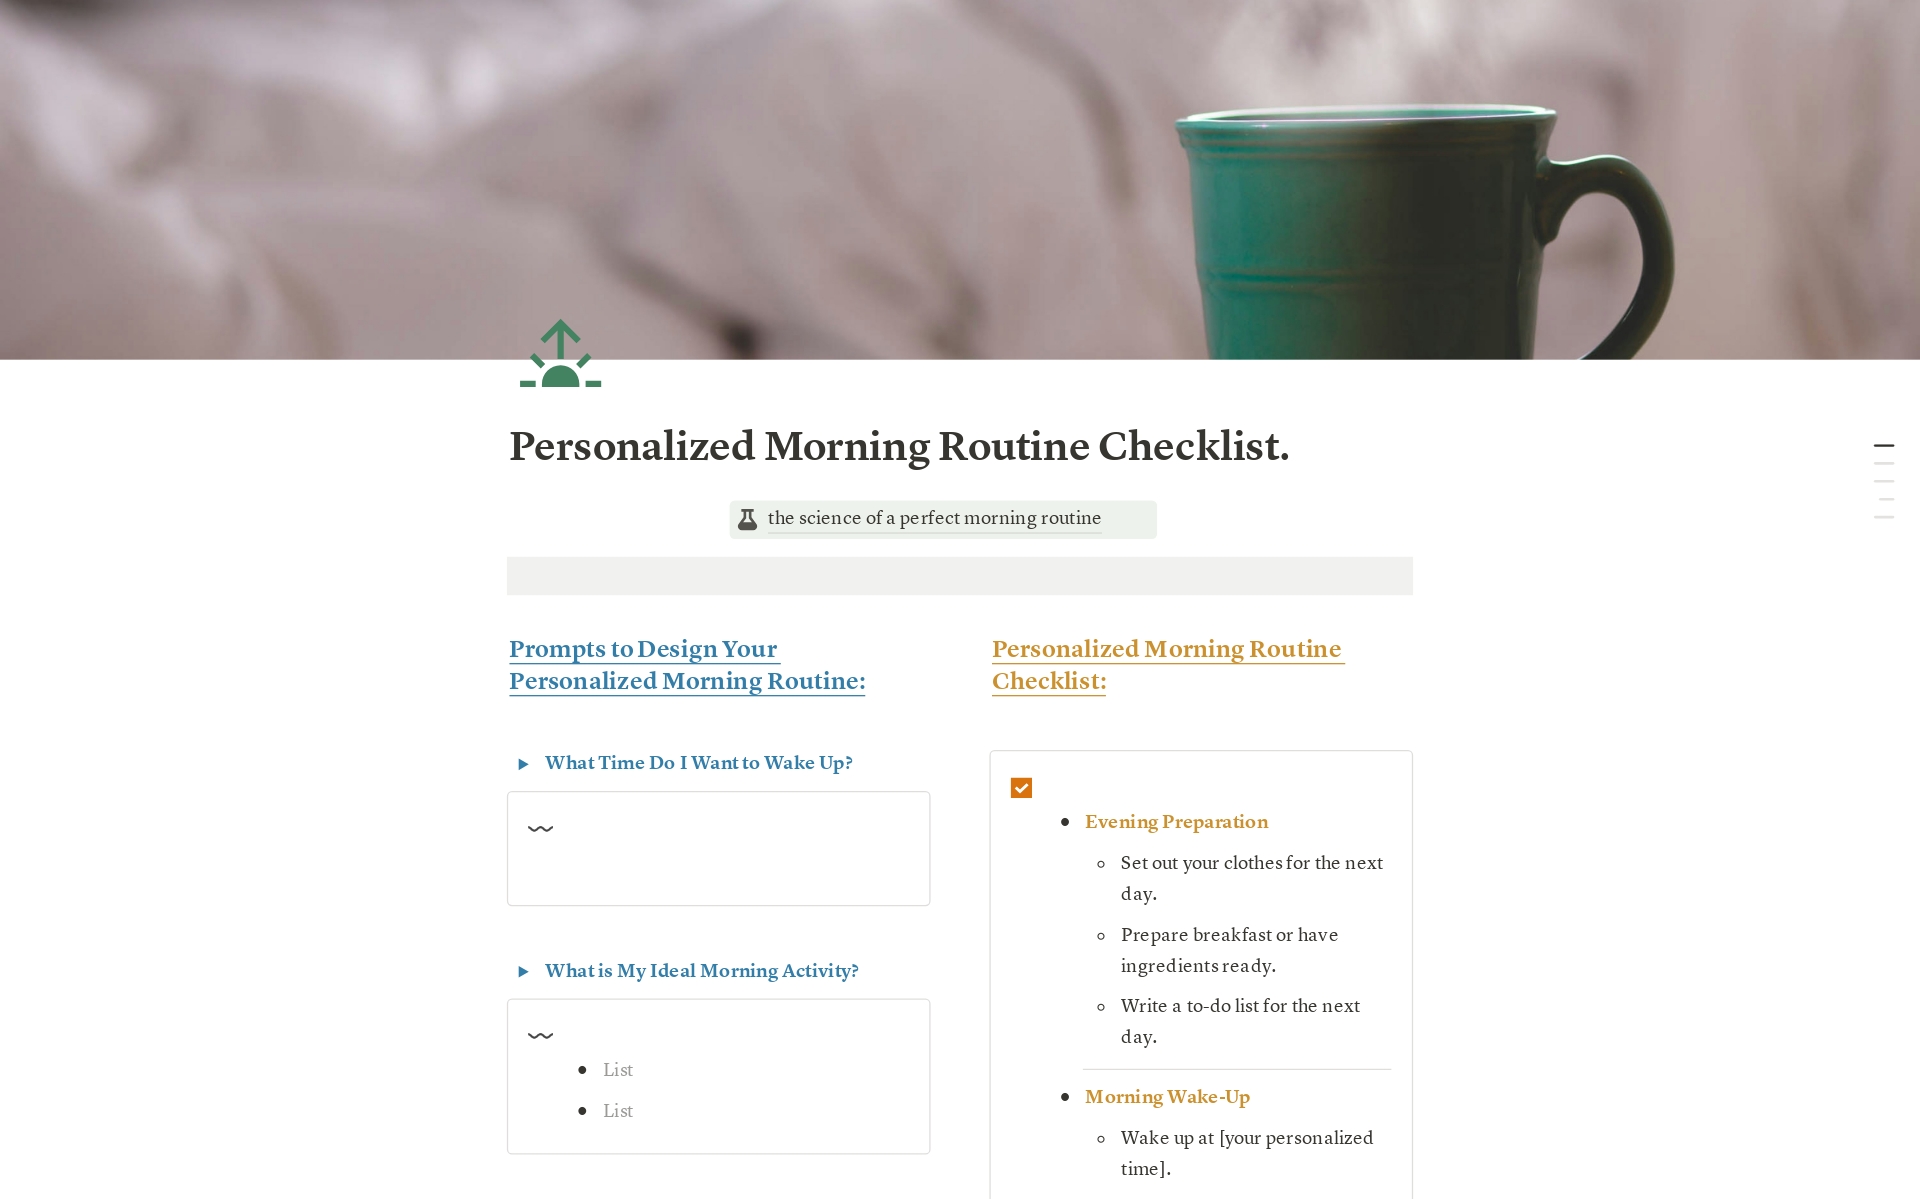 Uma prévia do modelo para Personalized Morning Routine Checklist